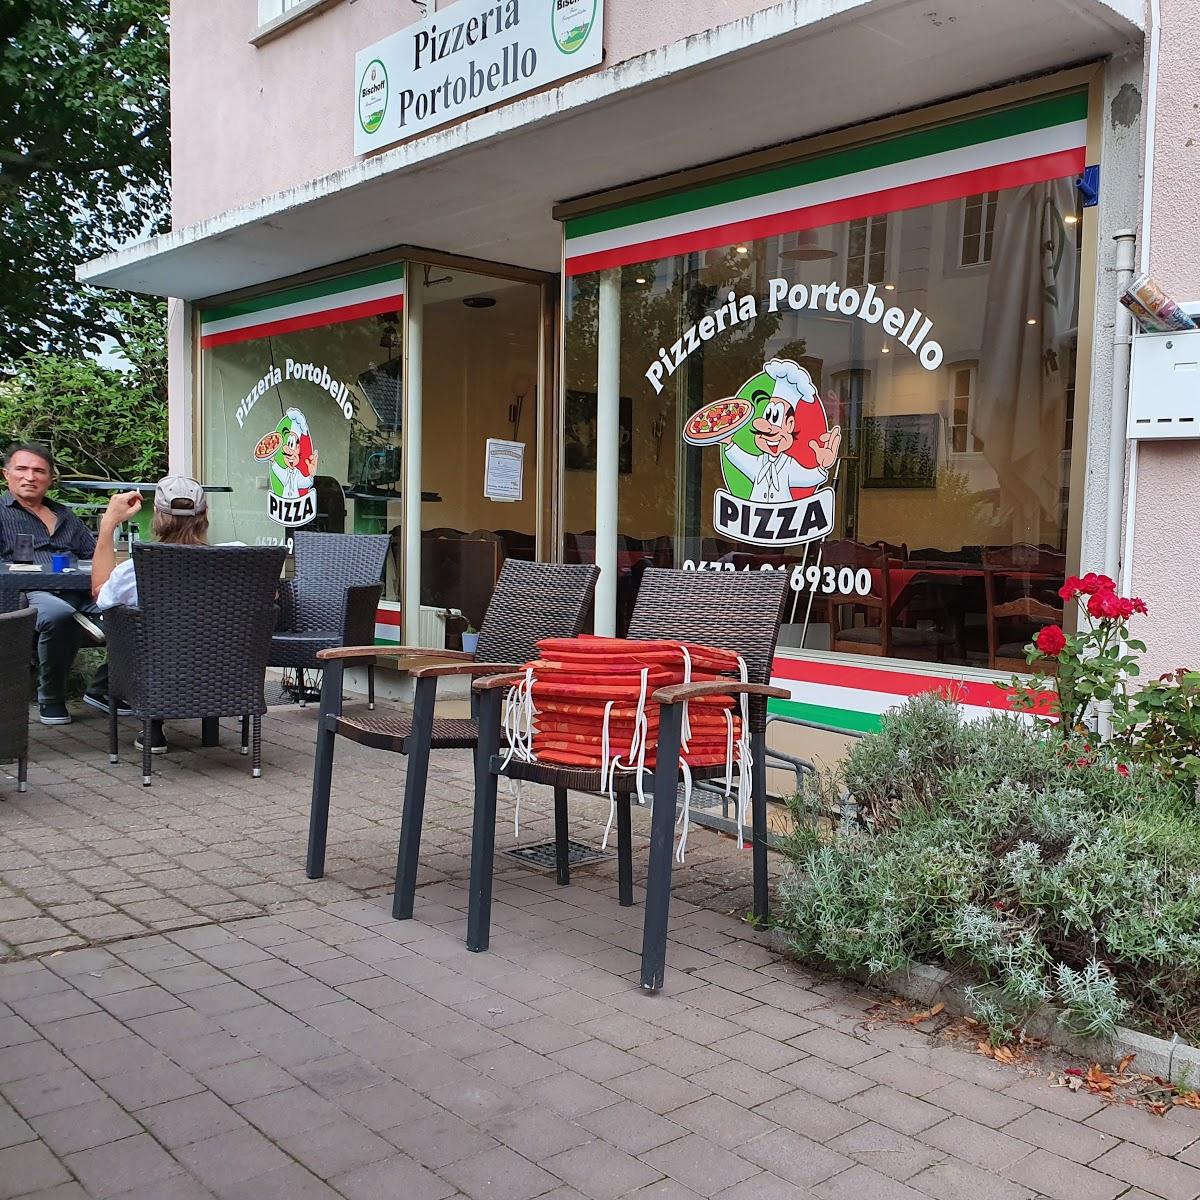 Restaurant "Pizzeria Porto Bello" in  Wendelsheim